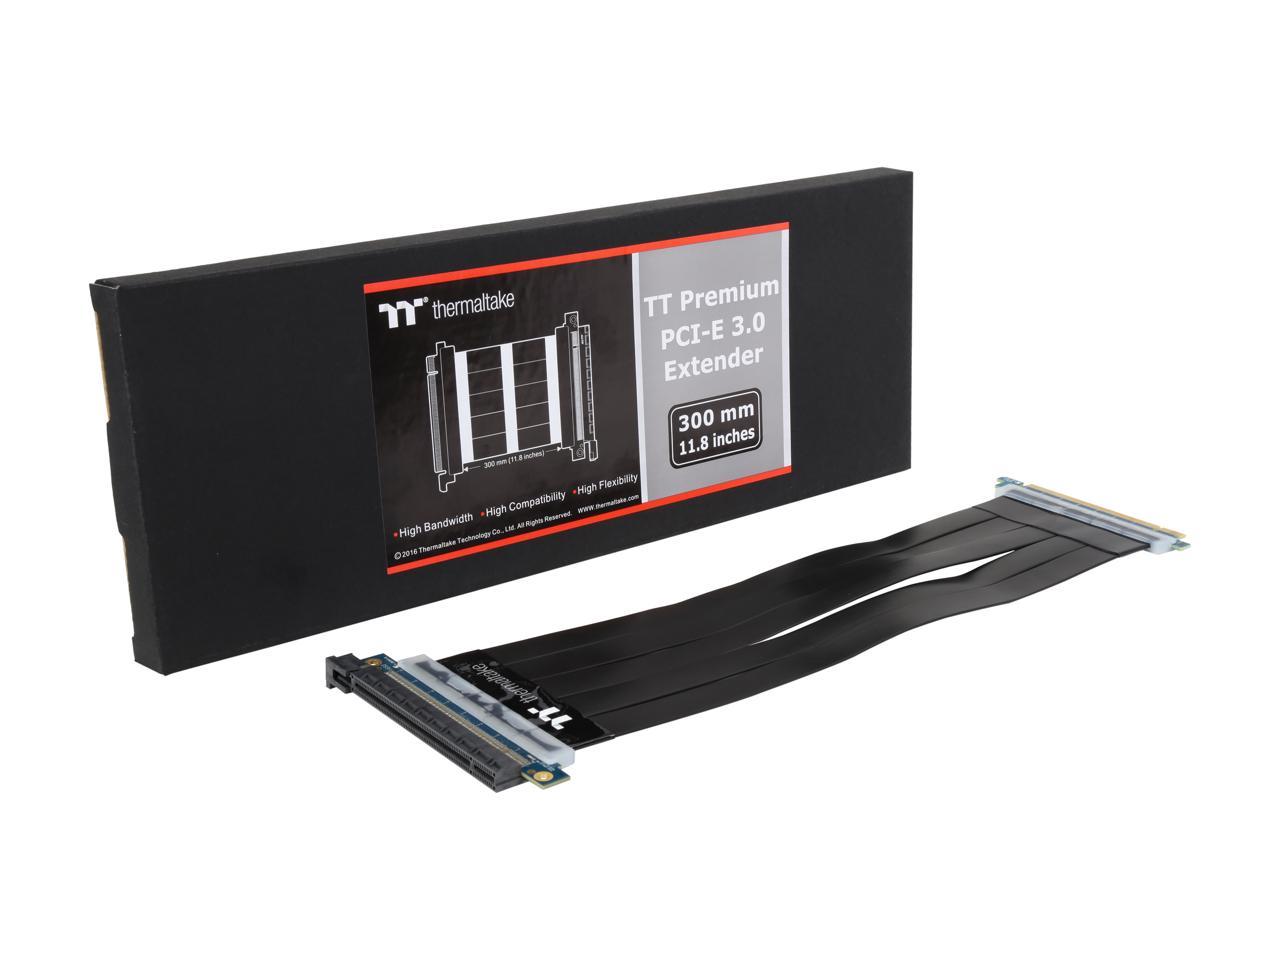 8368円 【超ポイント祭?期間限定】 Thermaltake TT Premium PCI Express Extender Cable 300mm ライザーケーブル CS6806 AC-045-CN1OTN-C1